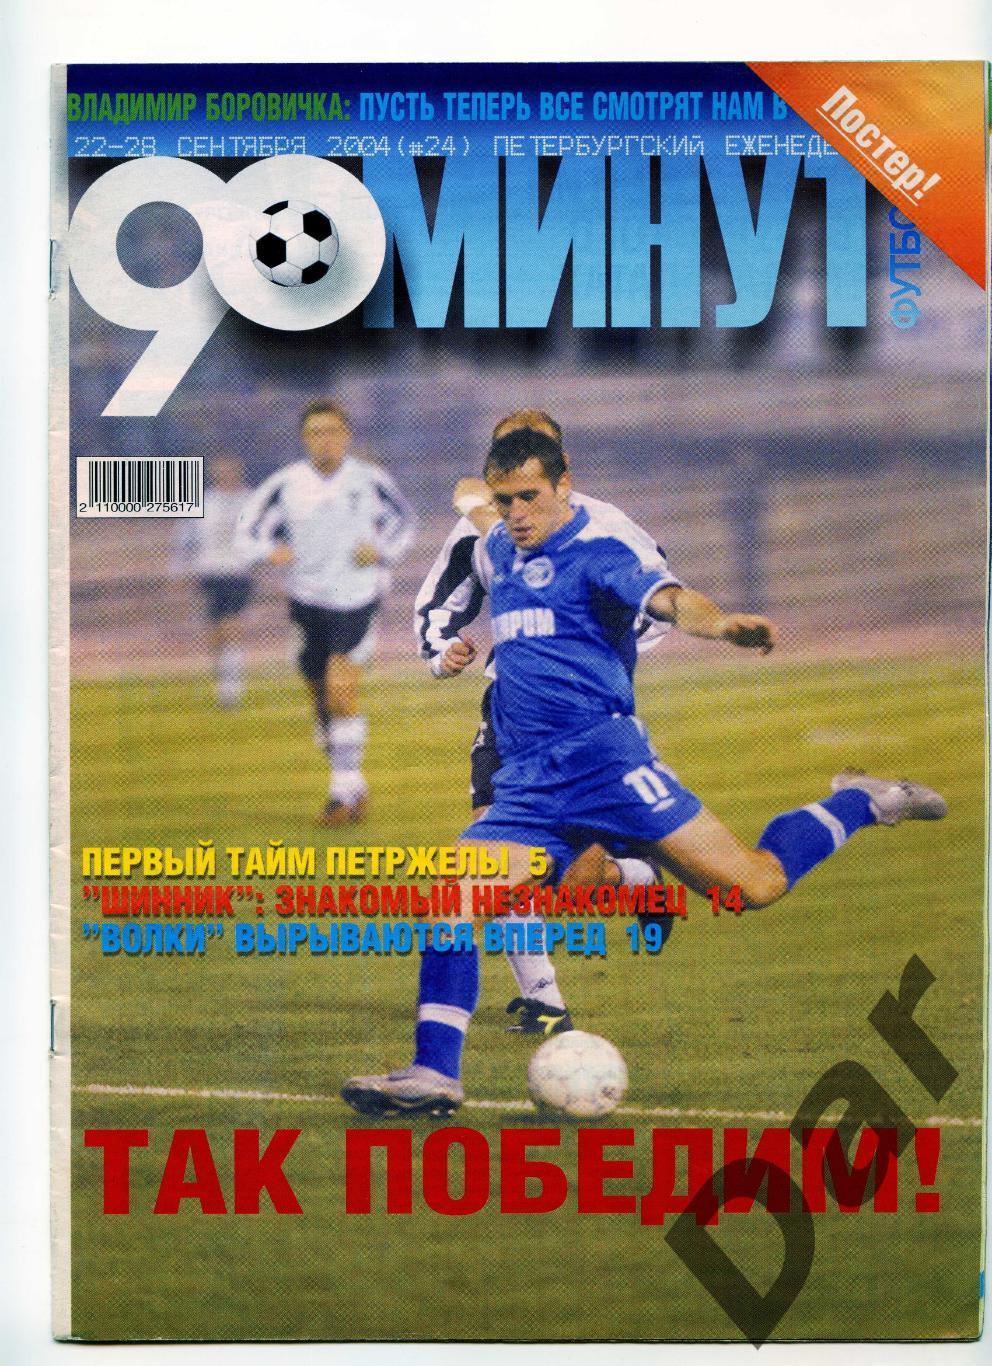 еженедельник 90 минут ФК Зенит № 24 сентябрь 2004 /Шинник, Иваново, Кострома